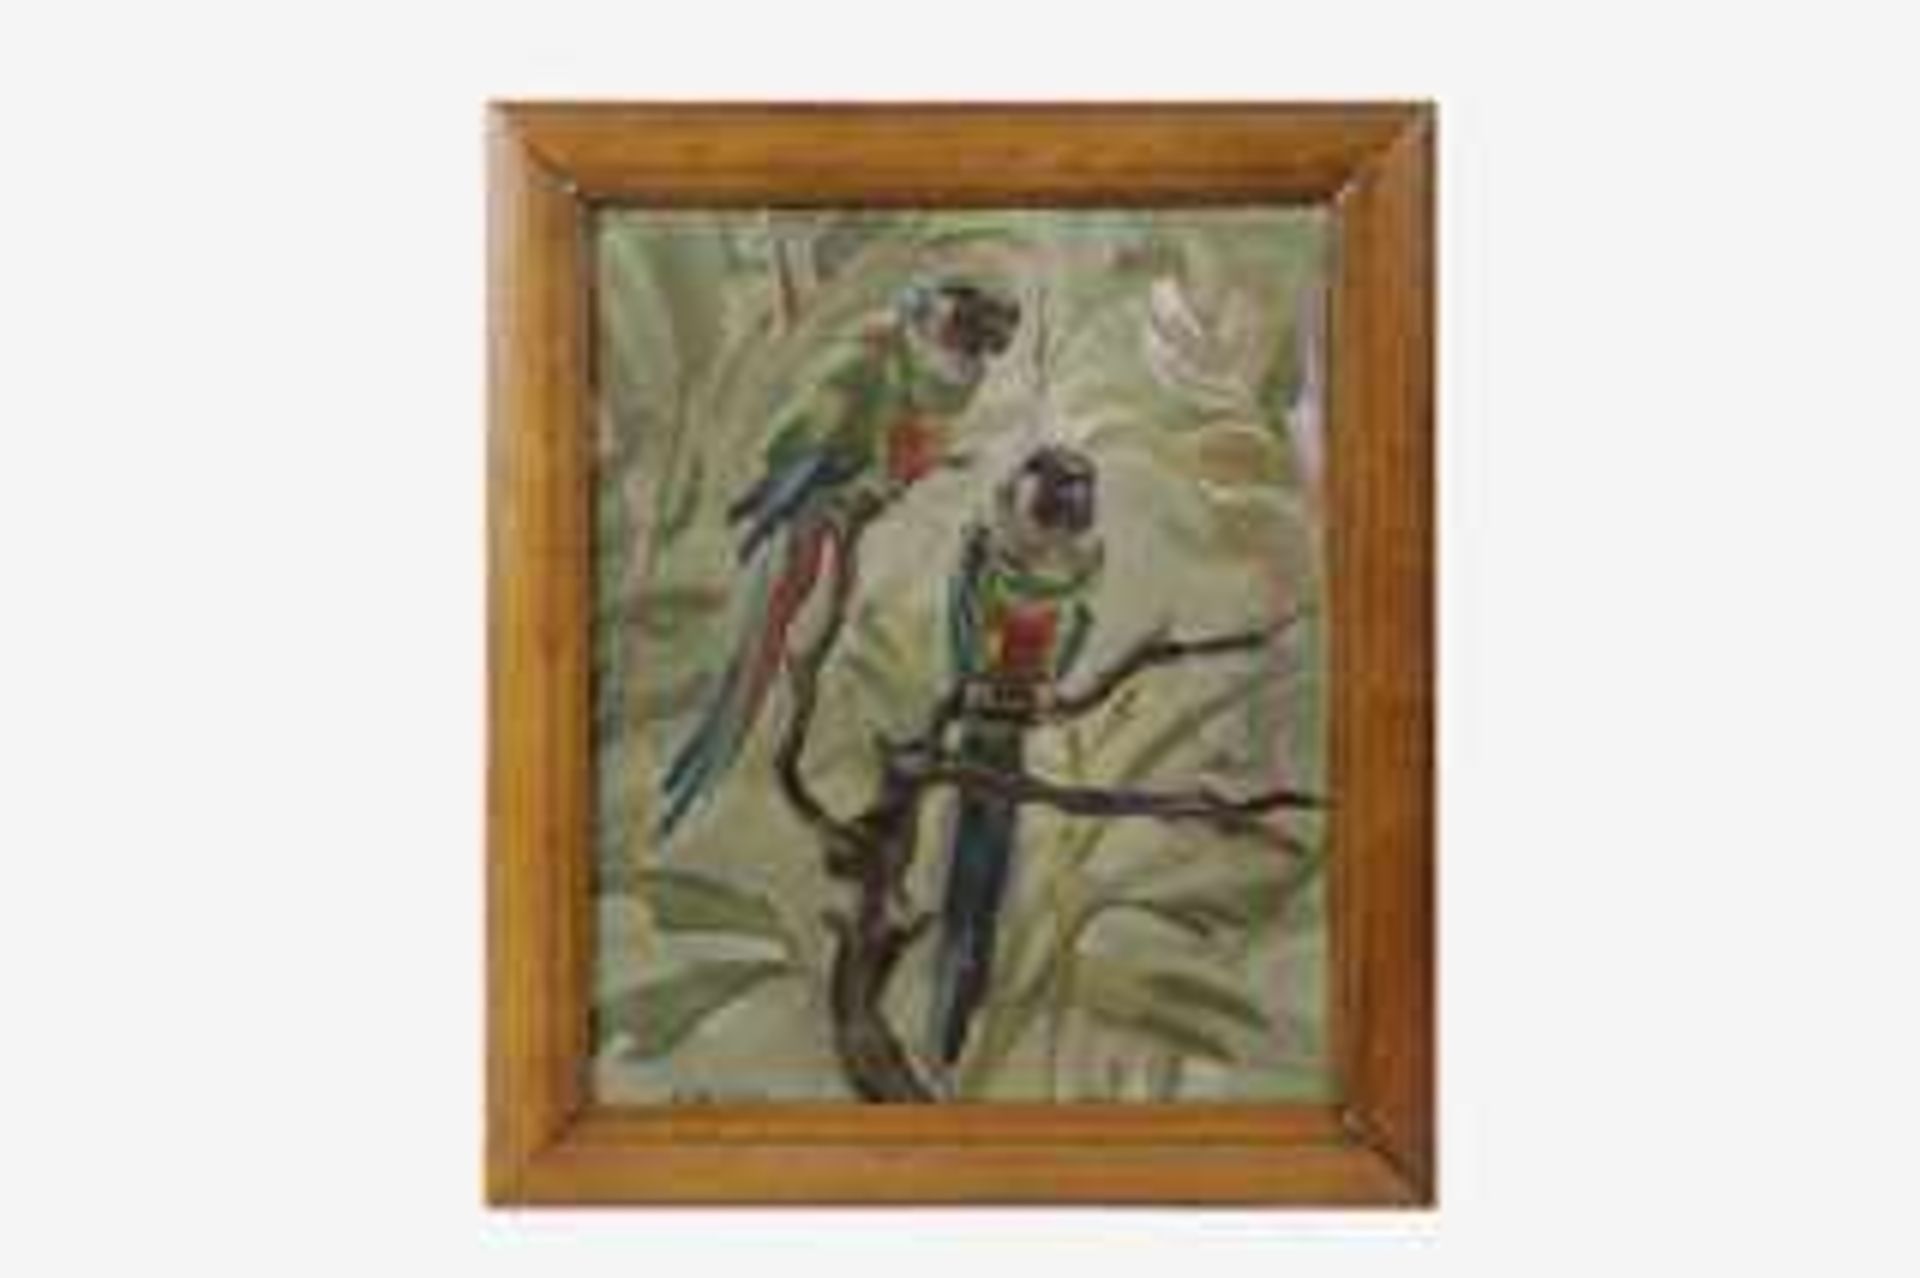 Maria Király (Przemysl 1897-1975 Wien) Papageien, signiert Király, Öl auf Leinwand, 33,5x27,5 cm,